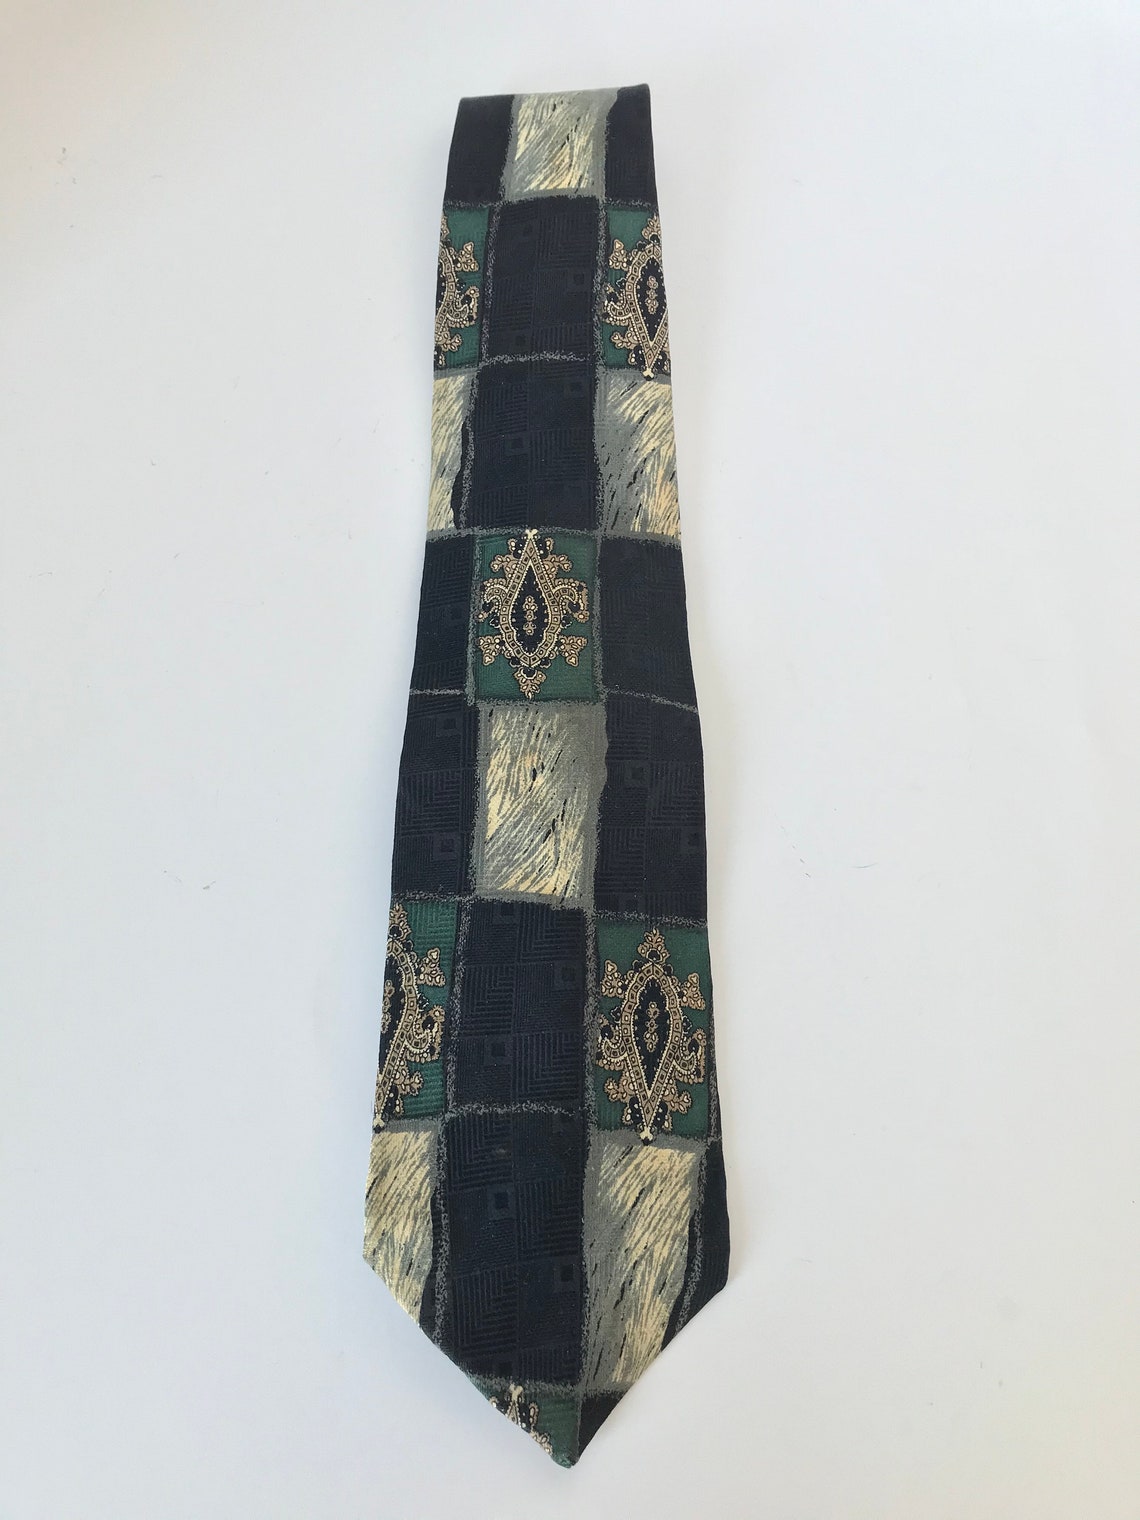 Vintage Oscar de la Renta Men's Silk Necktie in Black and | Etsy